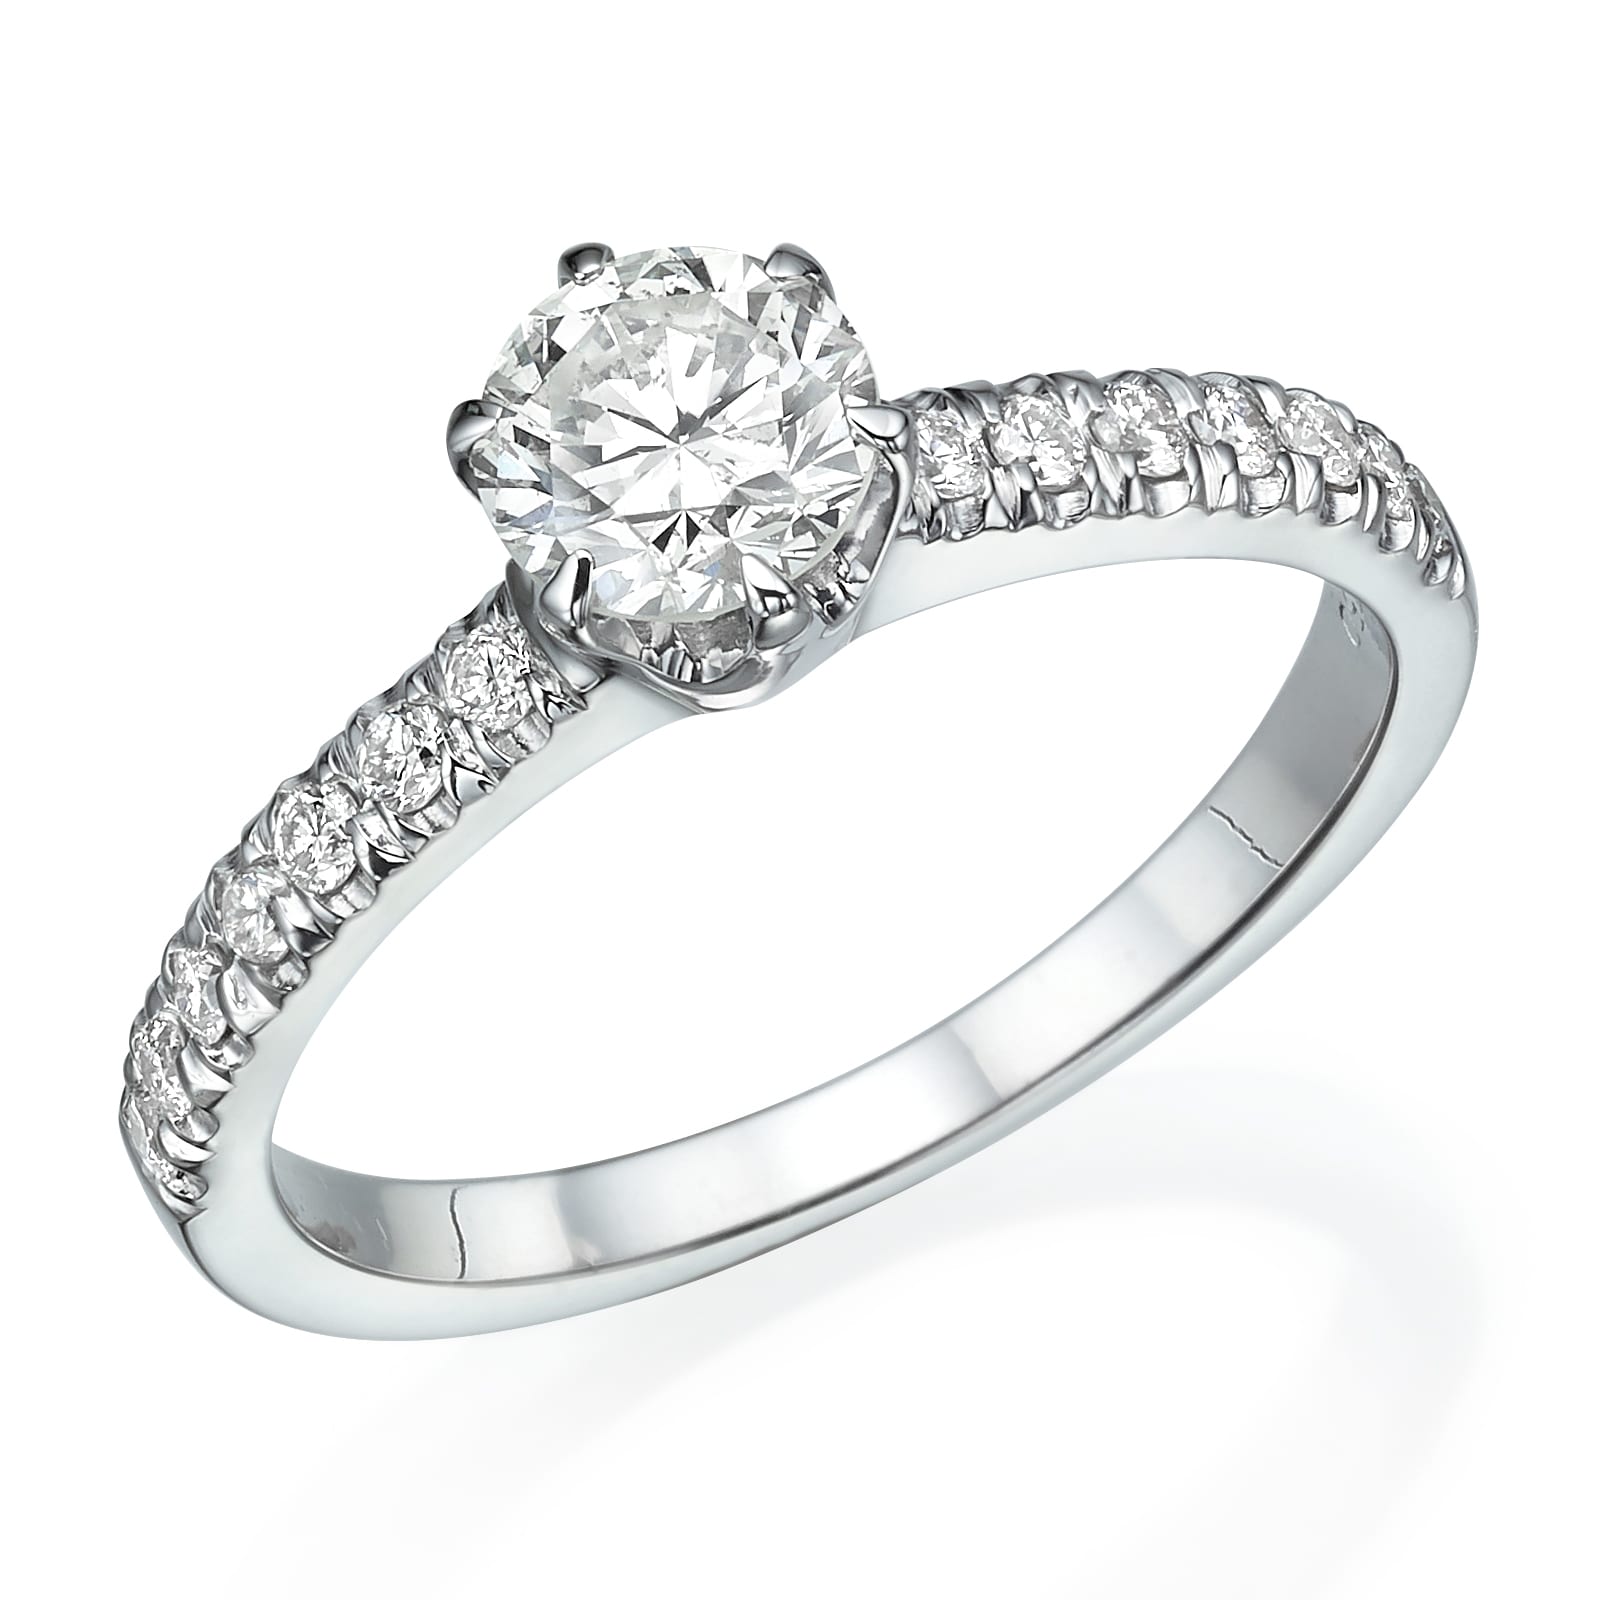 טבעת אירוסים נוצצת דגם אילנה עם אבן מרכזית בחיתוך עגול משובצת בגב גבוה, משלימה שורה של יהלומים קטנים יותר.